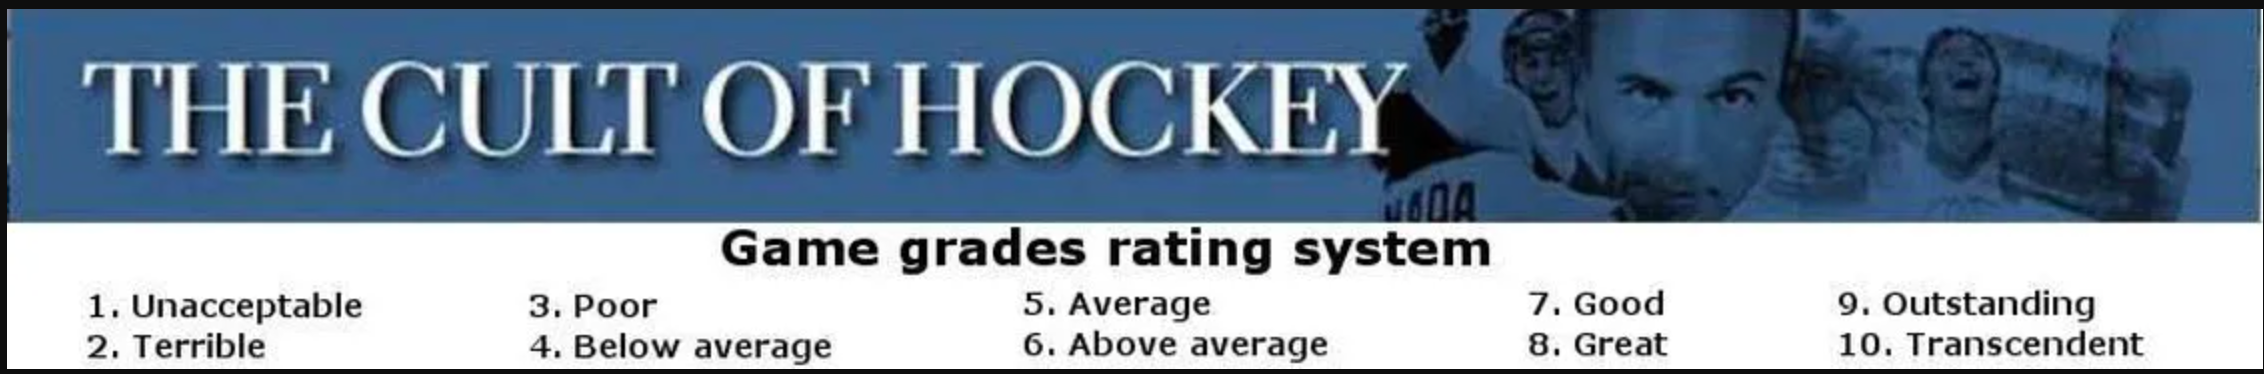 Cult of Hockey player grades